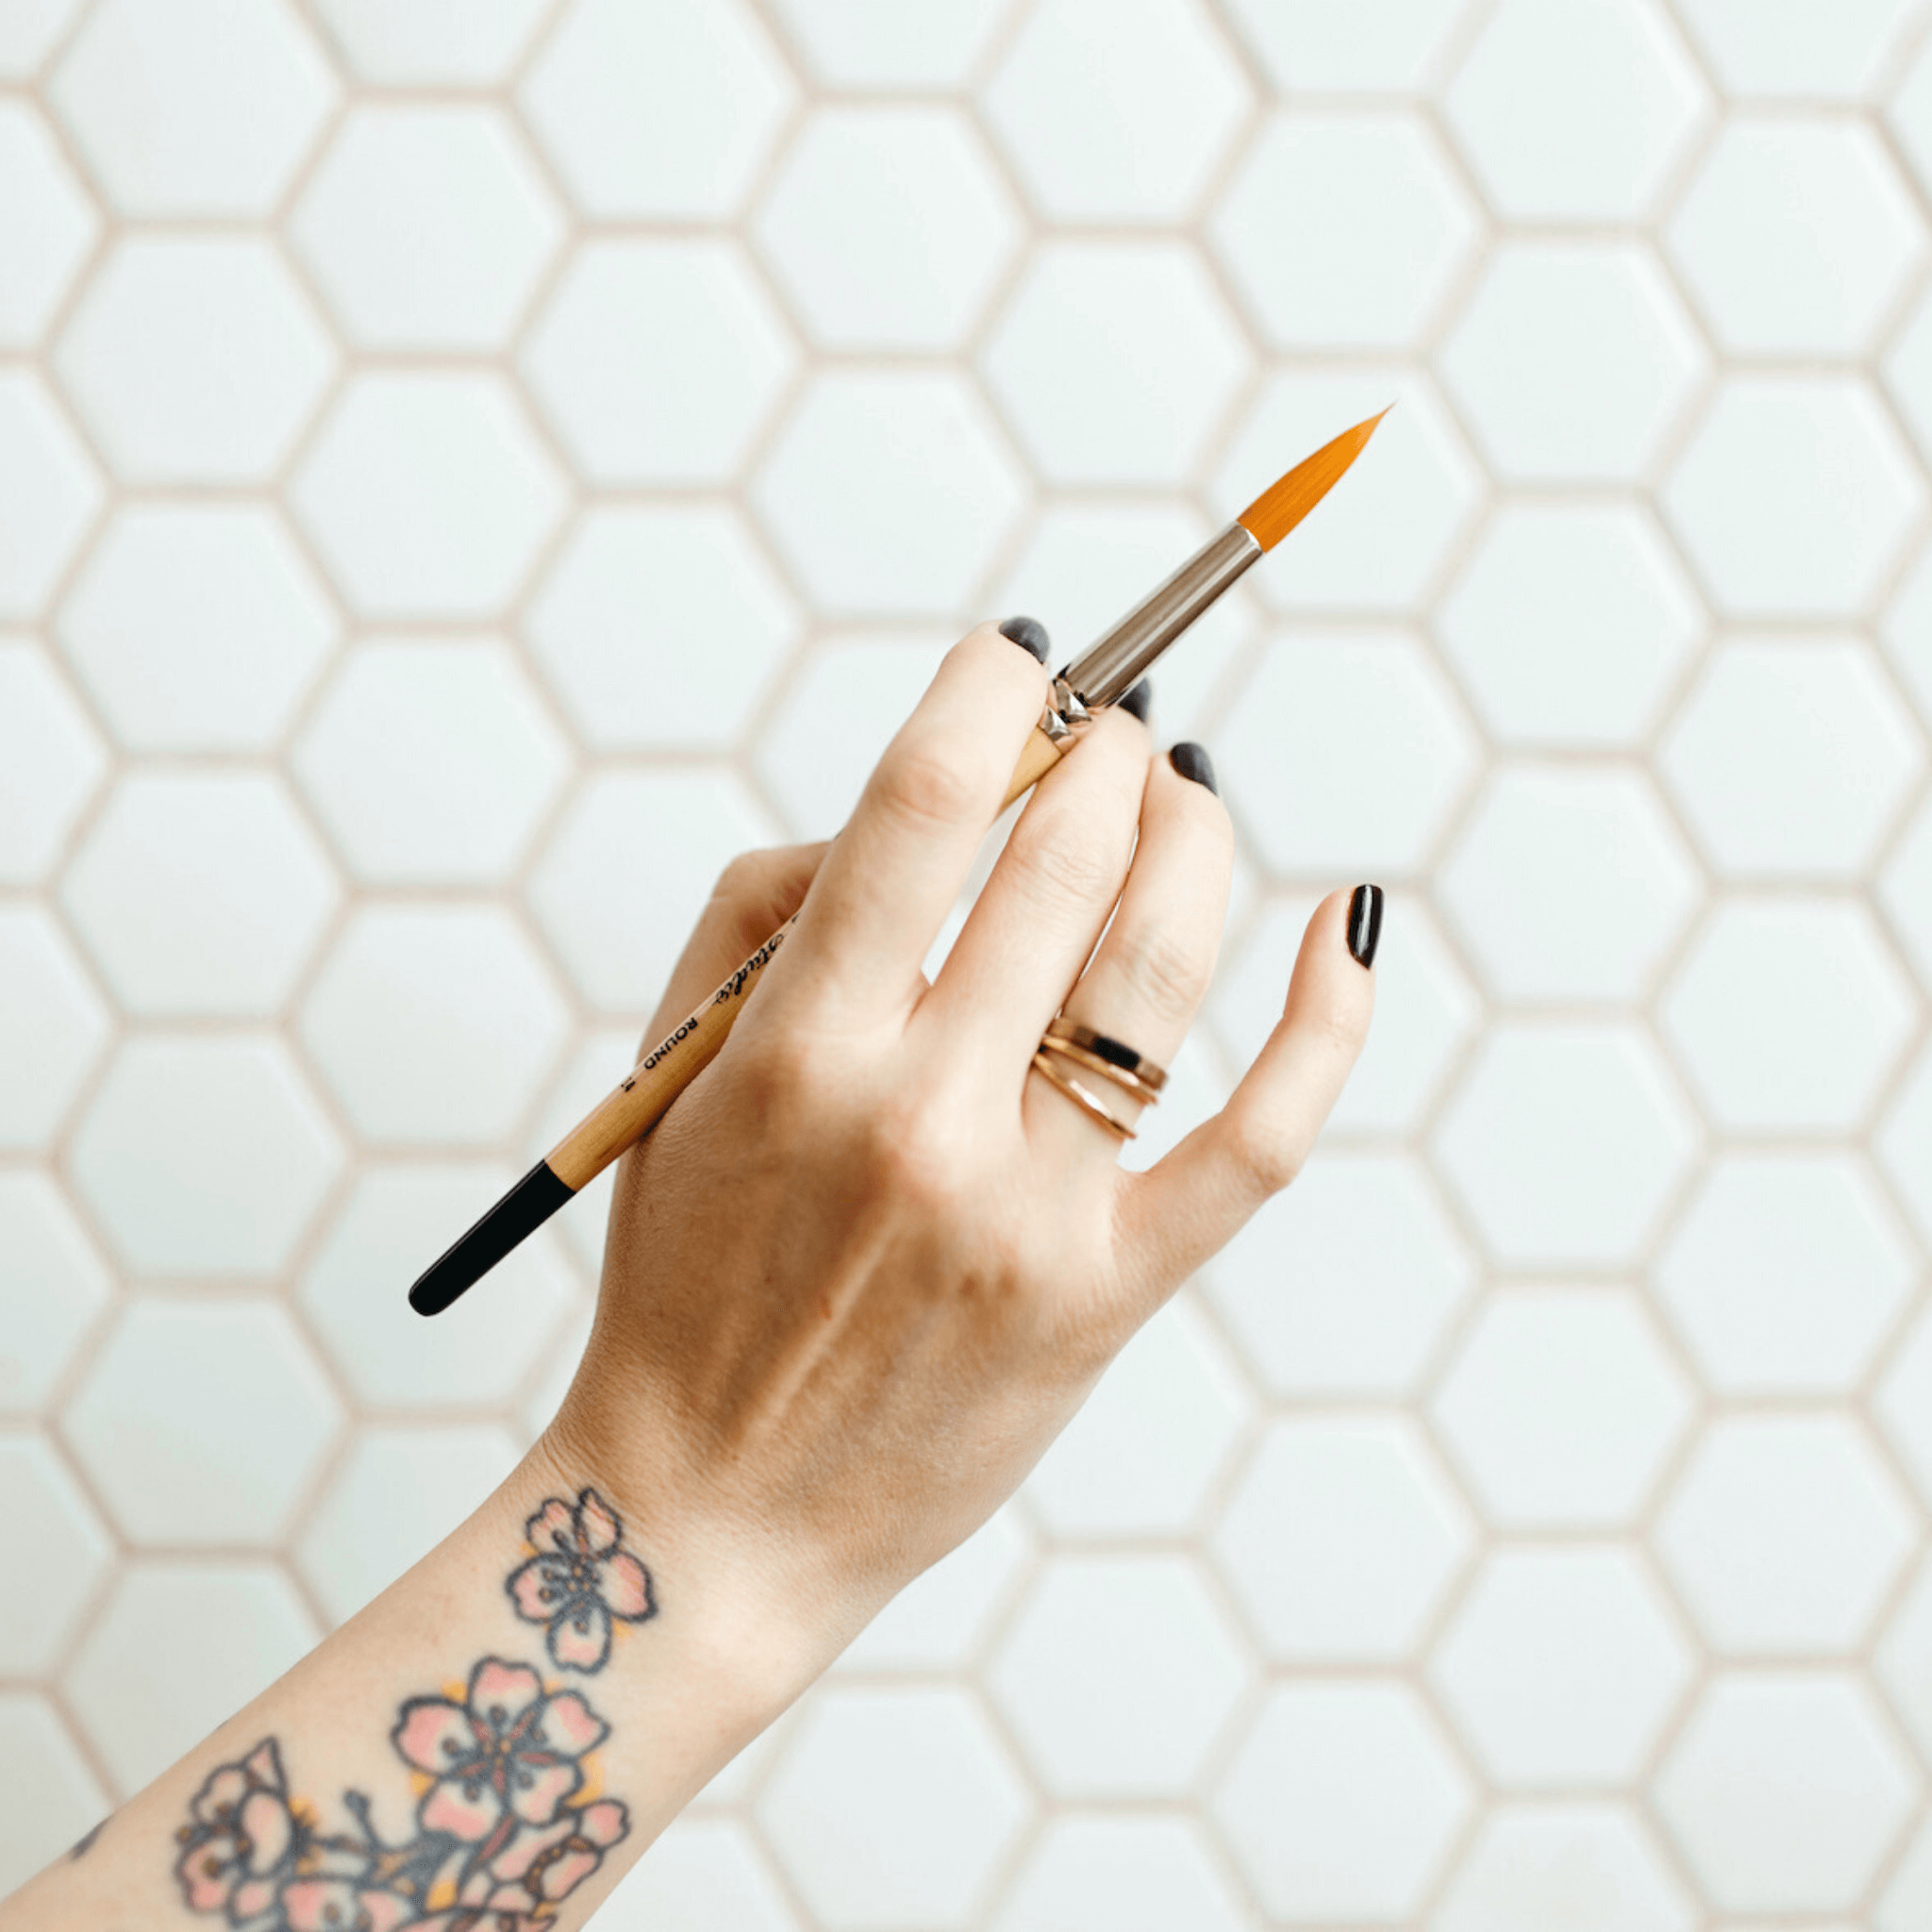 Elegant hand holding a paintbrush